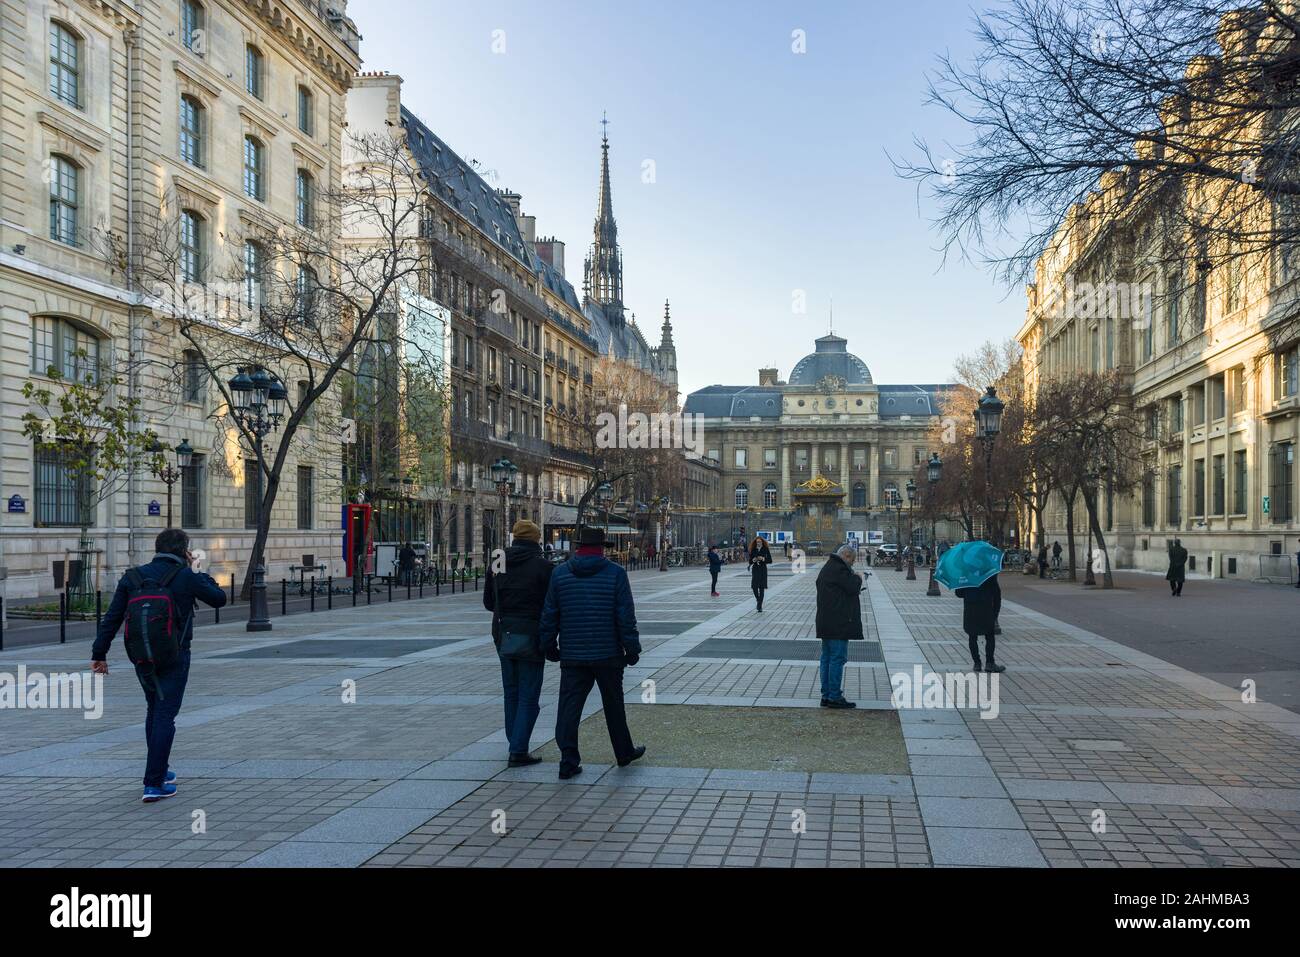 Palais de Justice de Paris viewed from Place Louis Lépine with people walking, Paris, France Stock Photo